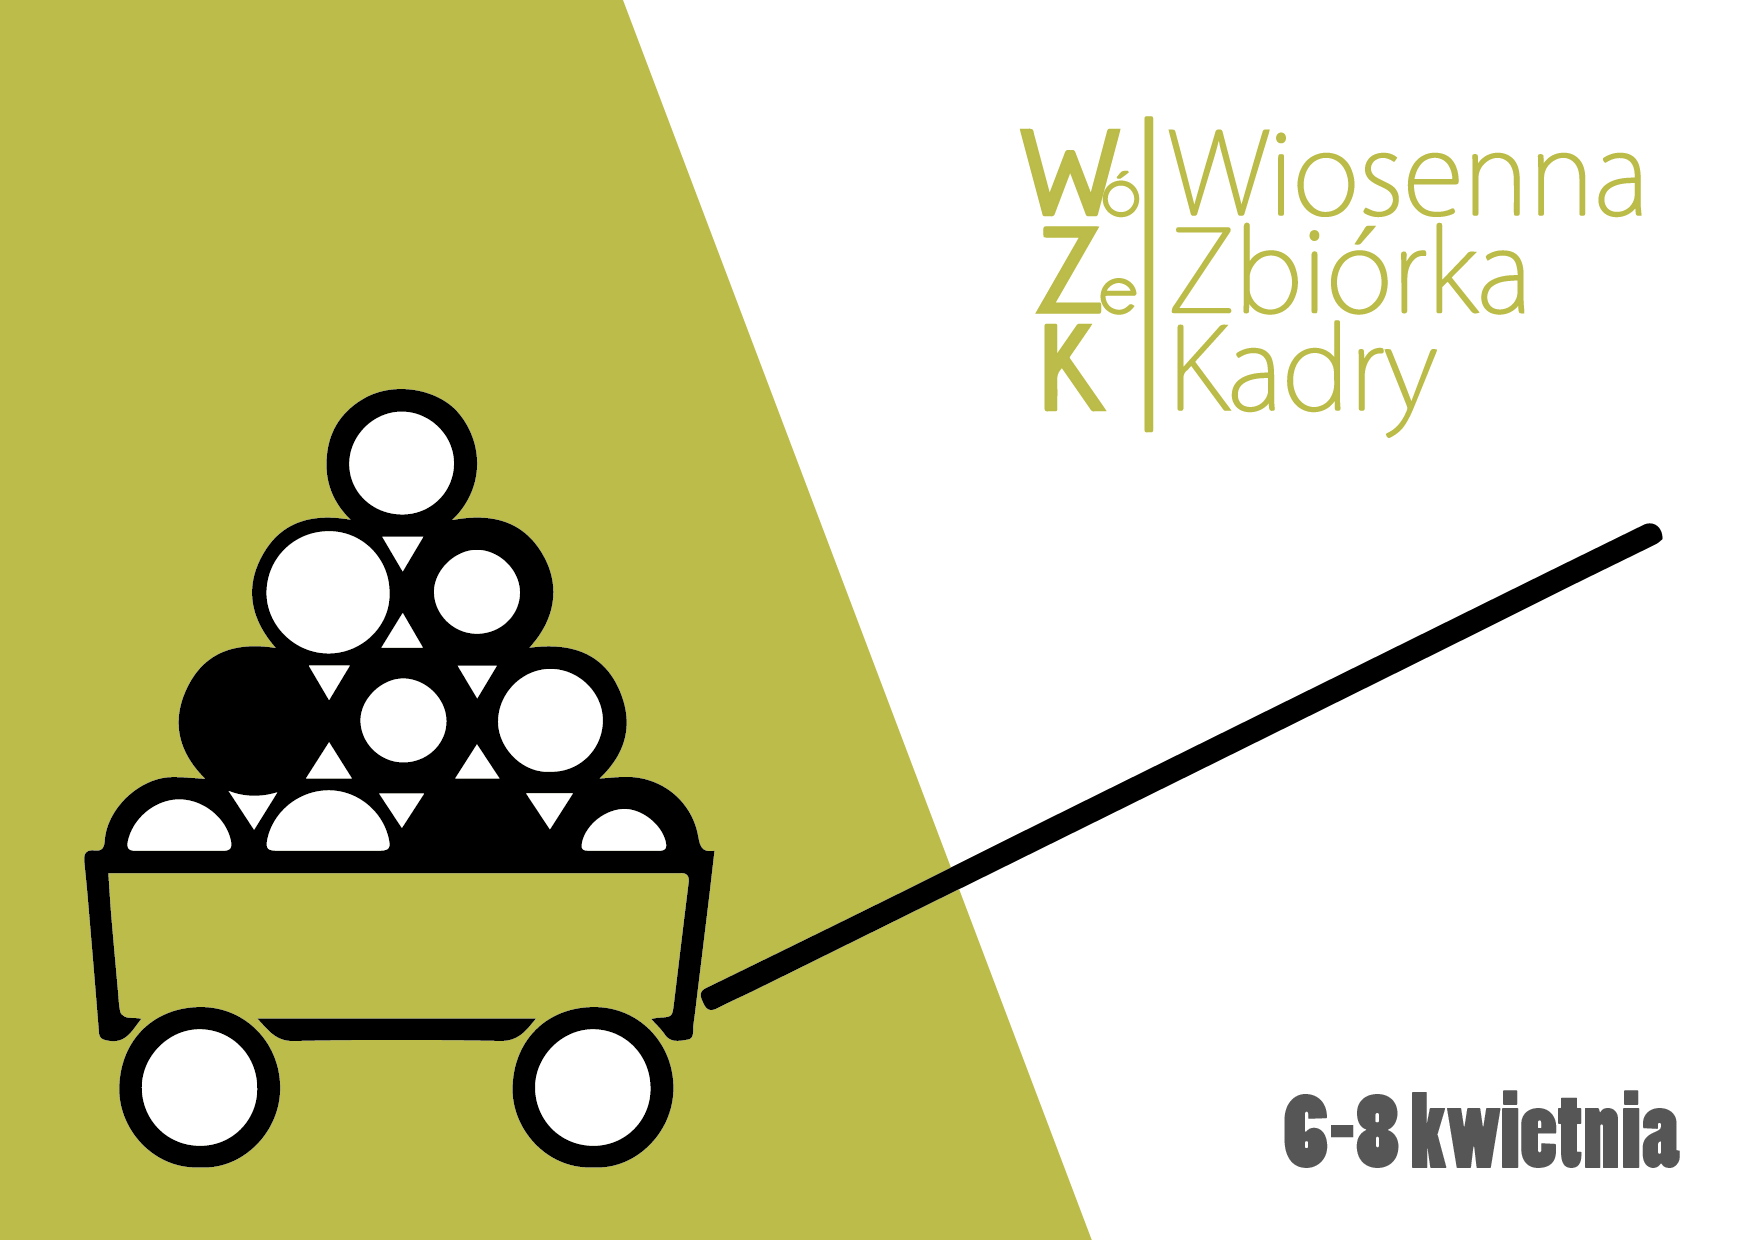 Wiosenna Zbiórka Kadry 06-08.04.2018